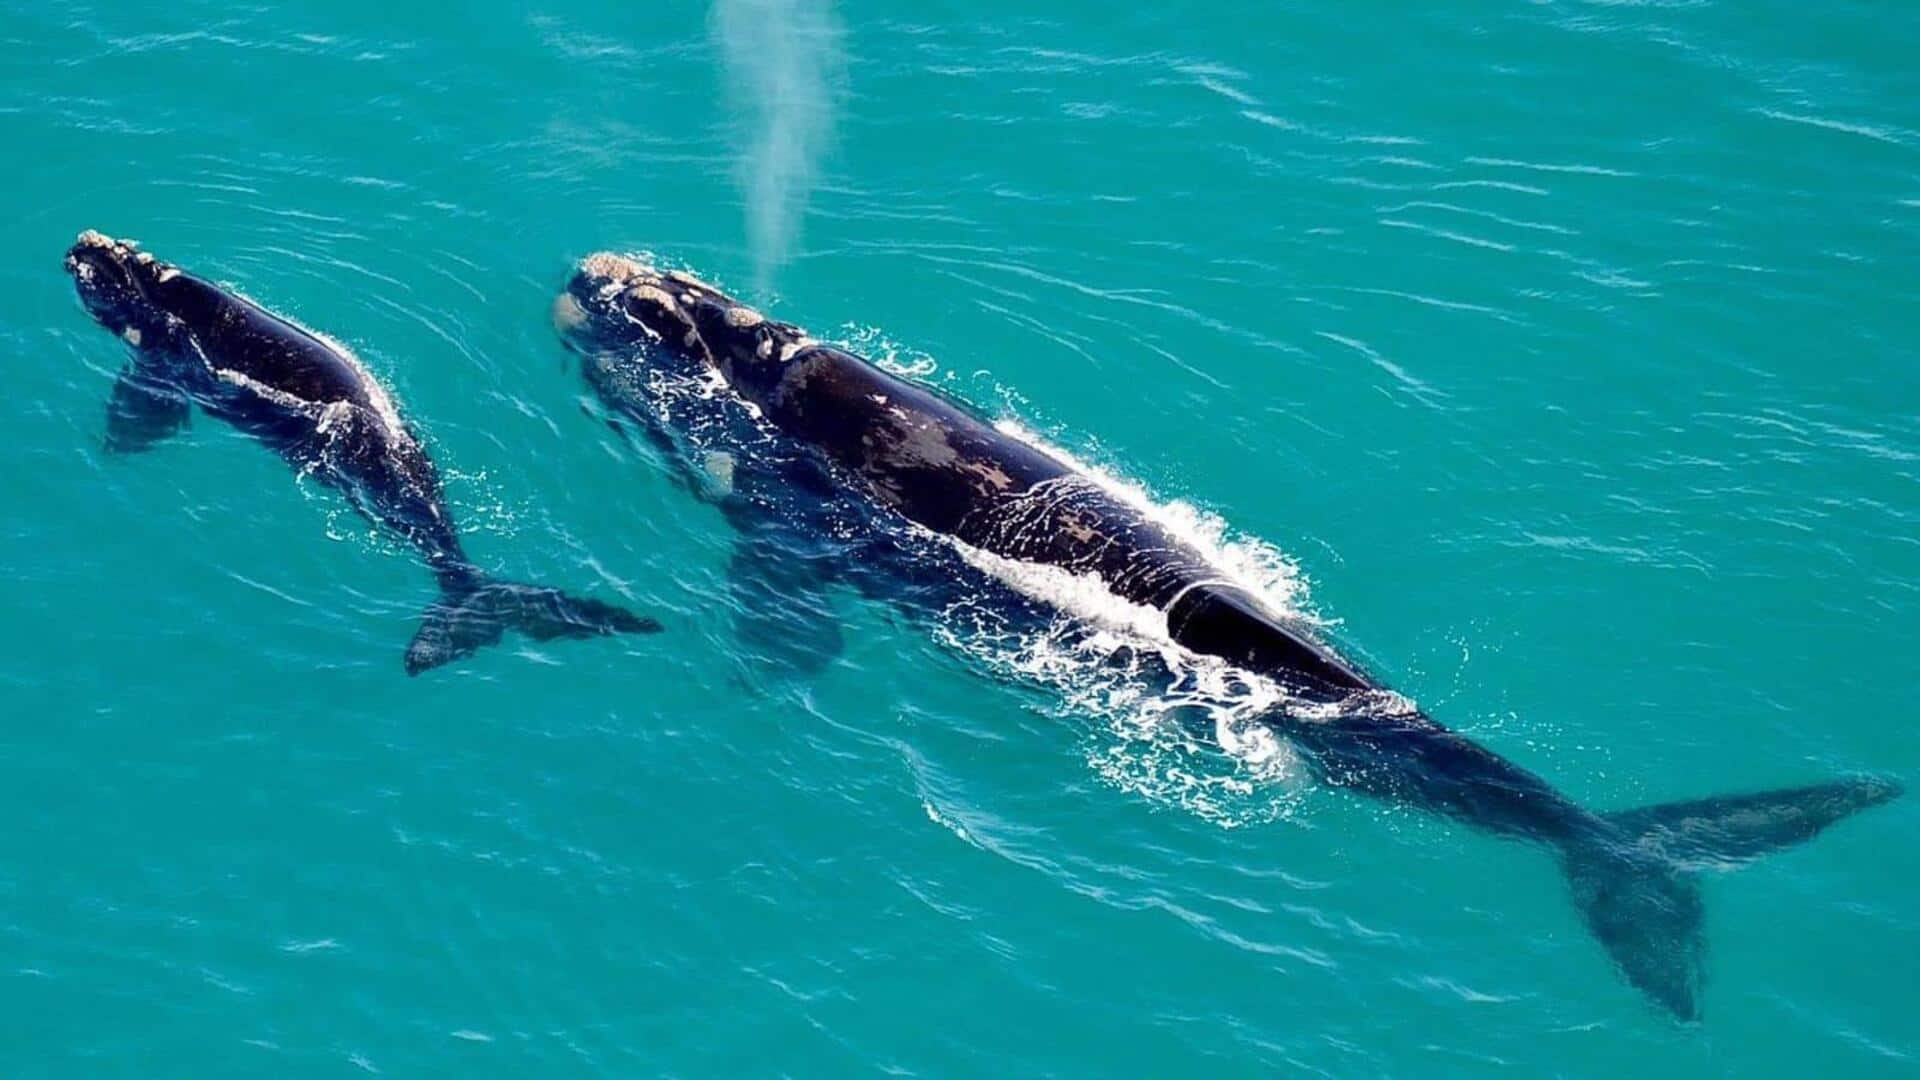 Petualangan mengamati paus di Hermanus, Afrika Selatan